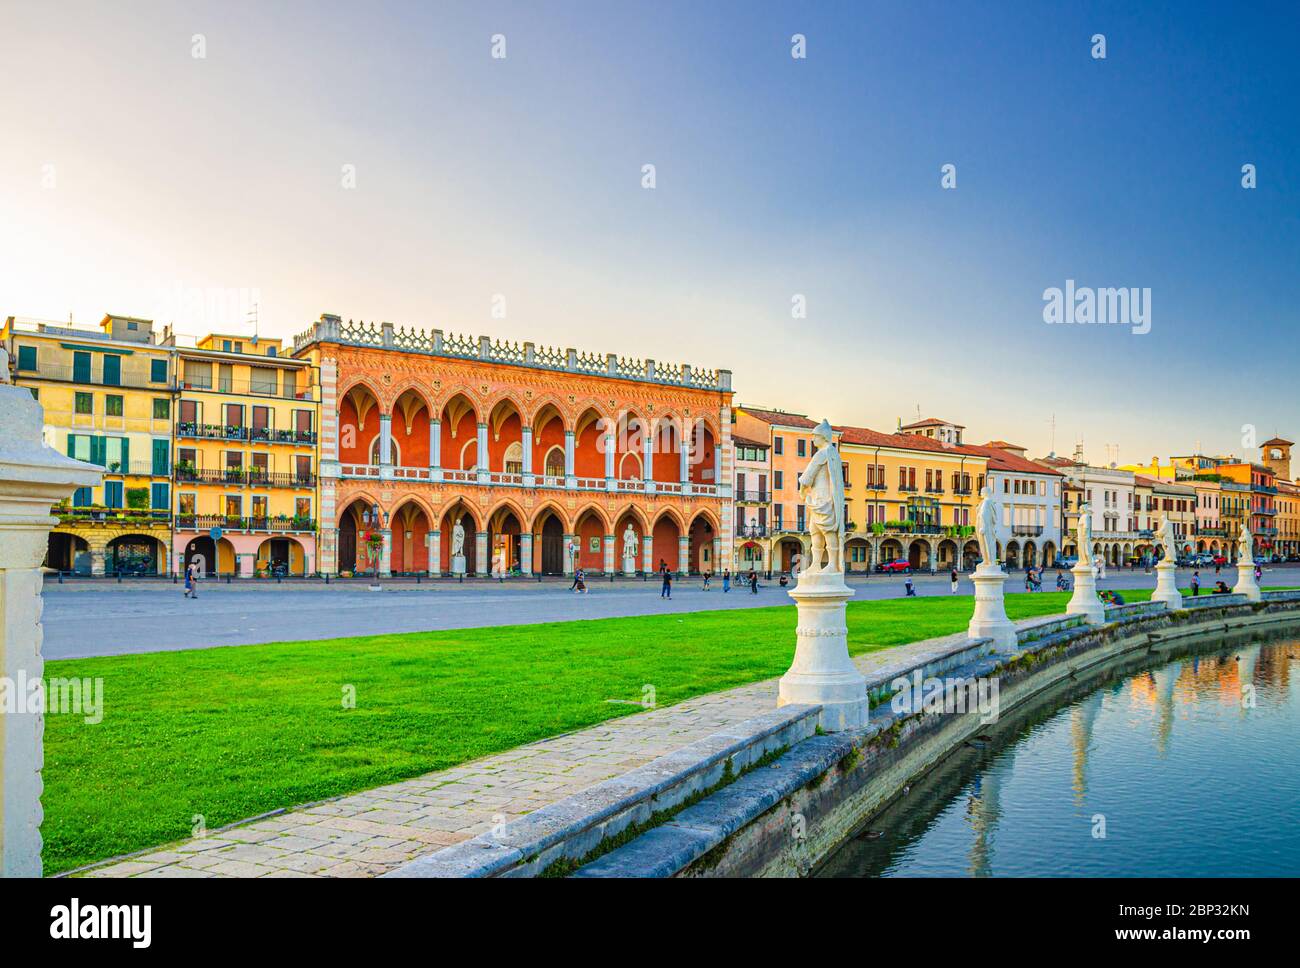 Padova con Palazzo Loggia Amulea palazzo in stile neogotico e statue vicino al piccolo canale in Piazza Prato della Valle nel centro storico Foto Stock